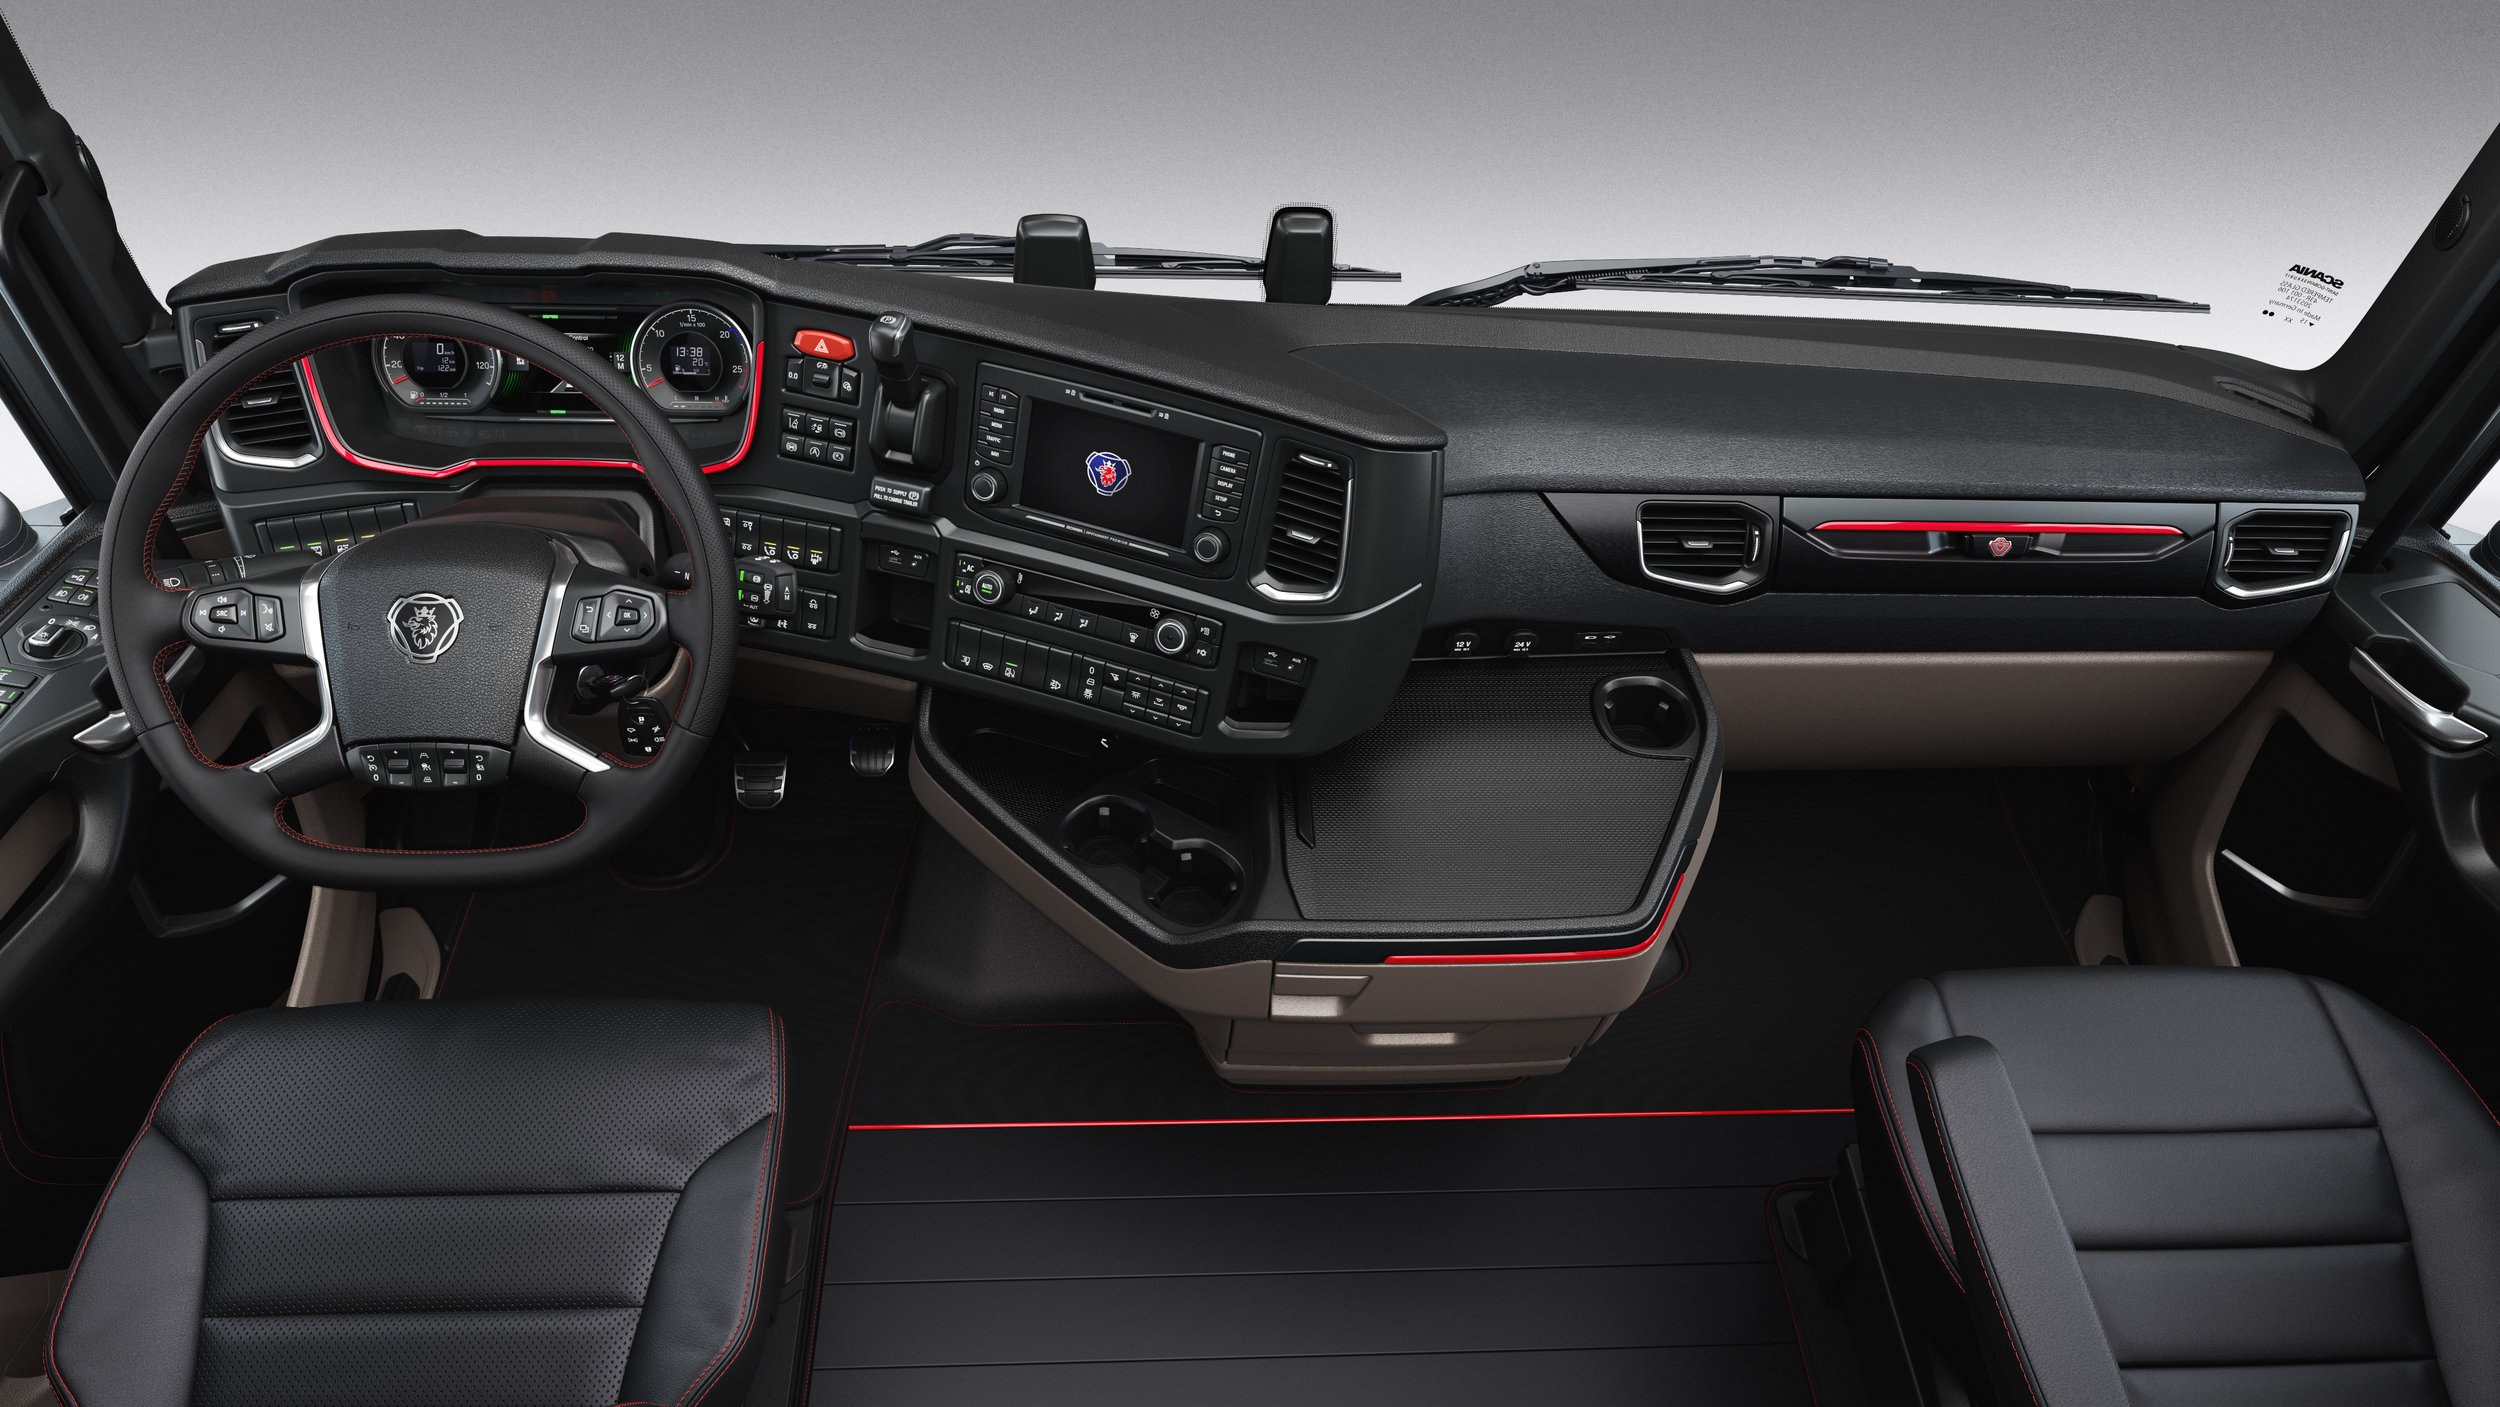 Scania S Series Interior